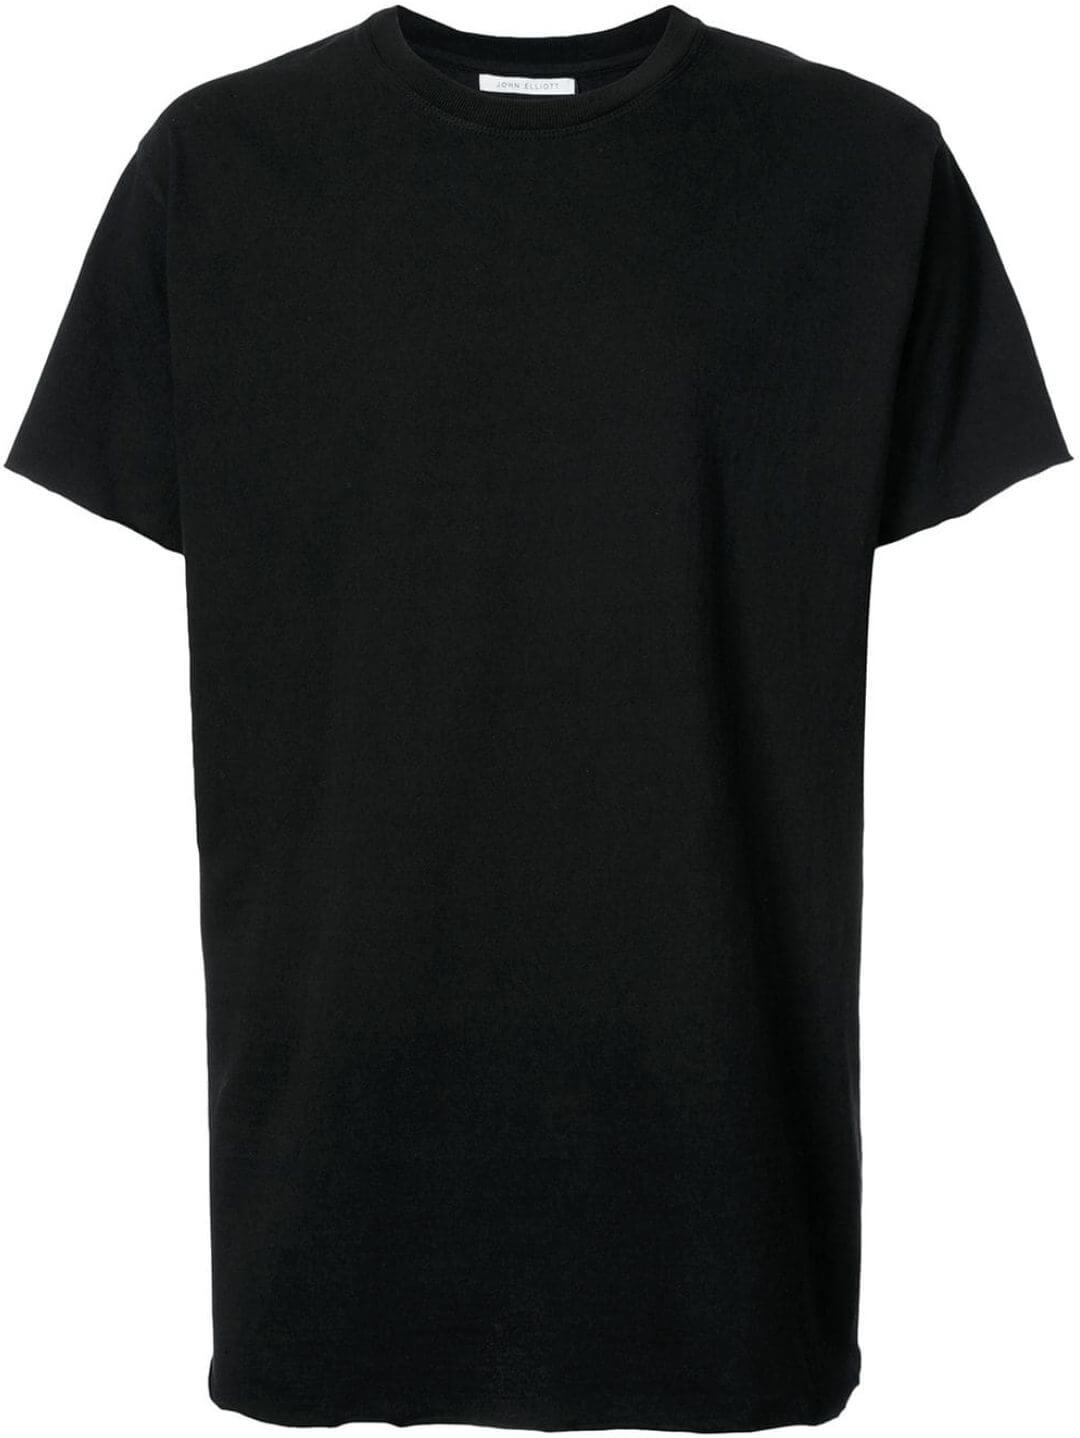 黒tシャツ コーデ メンズ特集 最新 メンズファッションメディア Otokomae